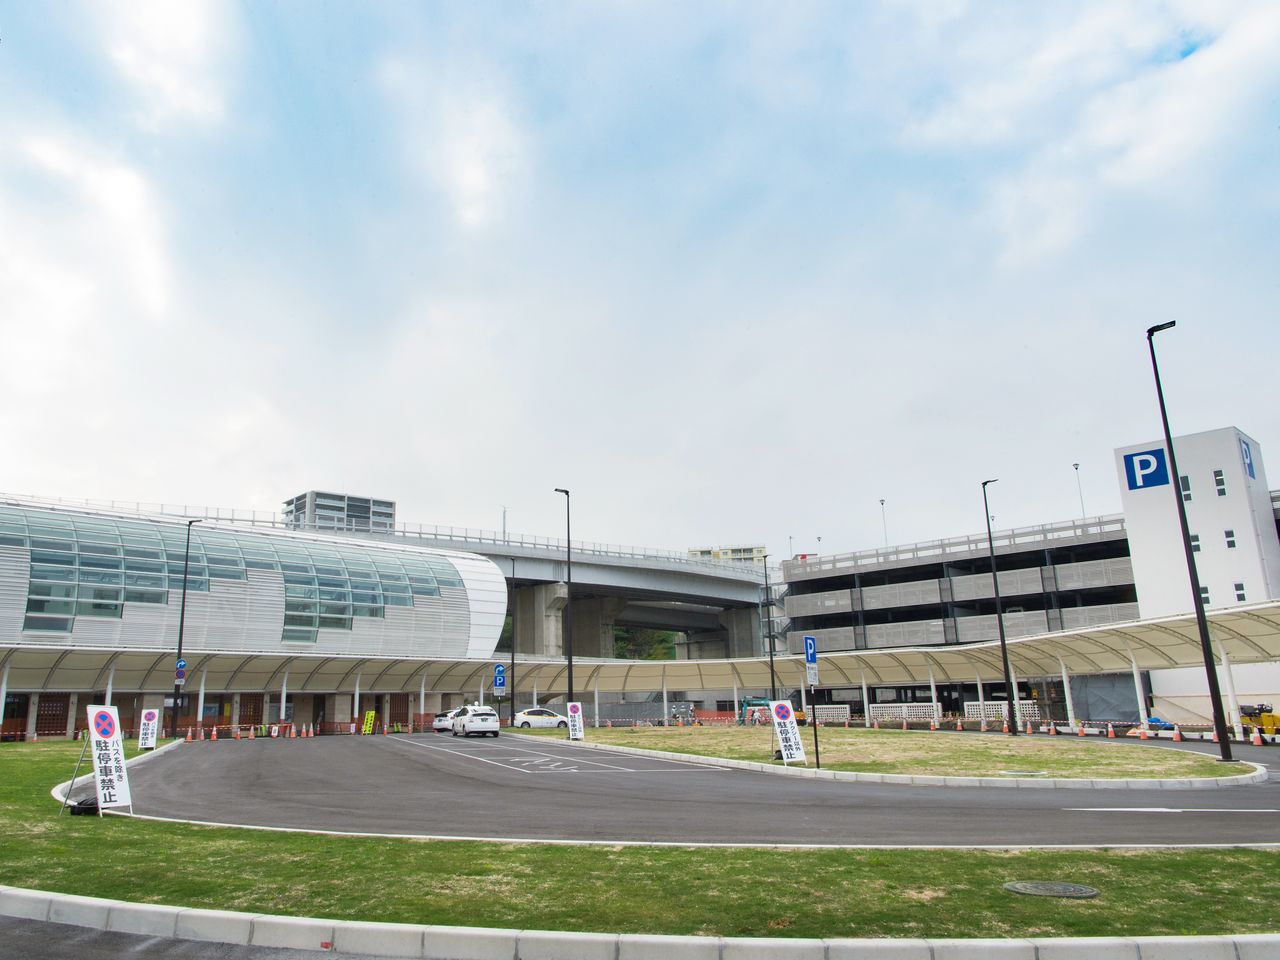 てだこ浦西駅は立体駐車場を併設。「てだこ」は「太陽」を意味する。高速バスターミナルや周辺道路など、しばらくは整備工事が続く